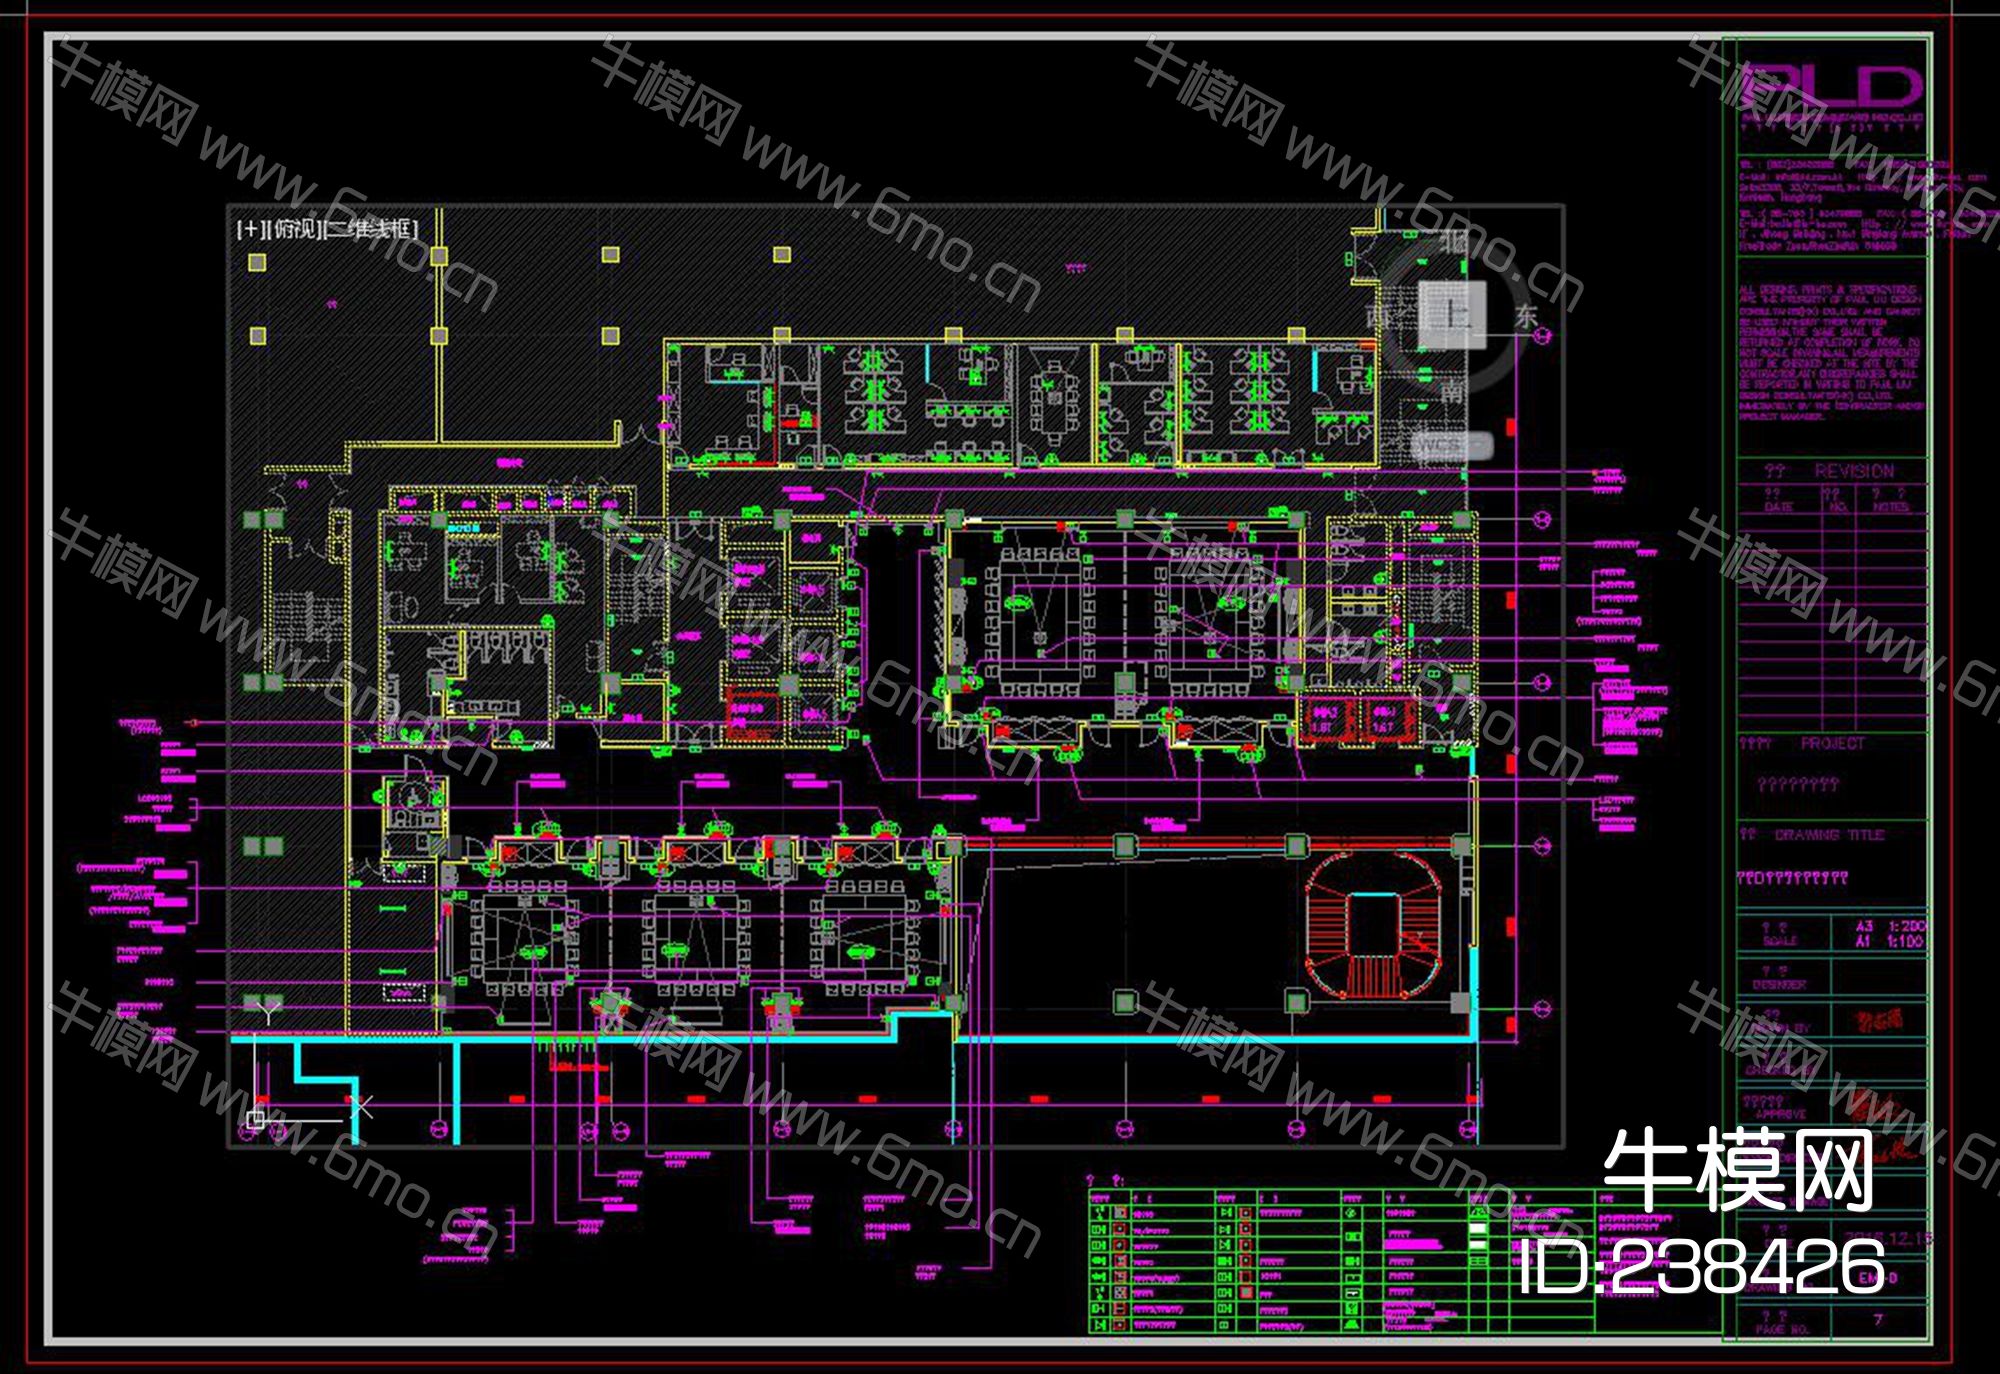 同泰万怡酒店公共区域CAD施工图效果图